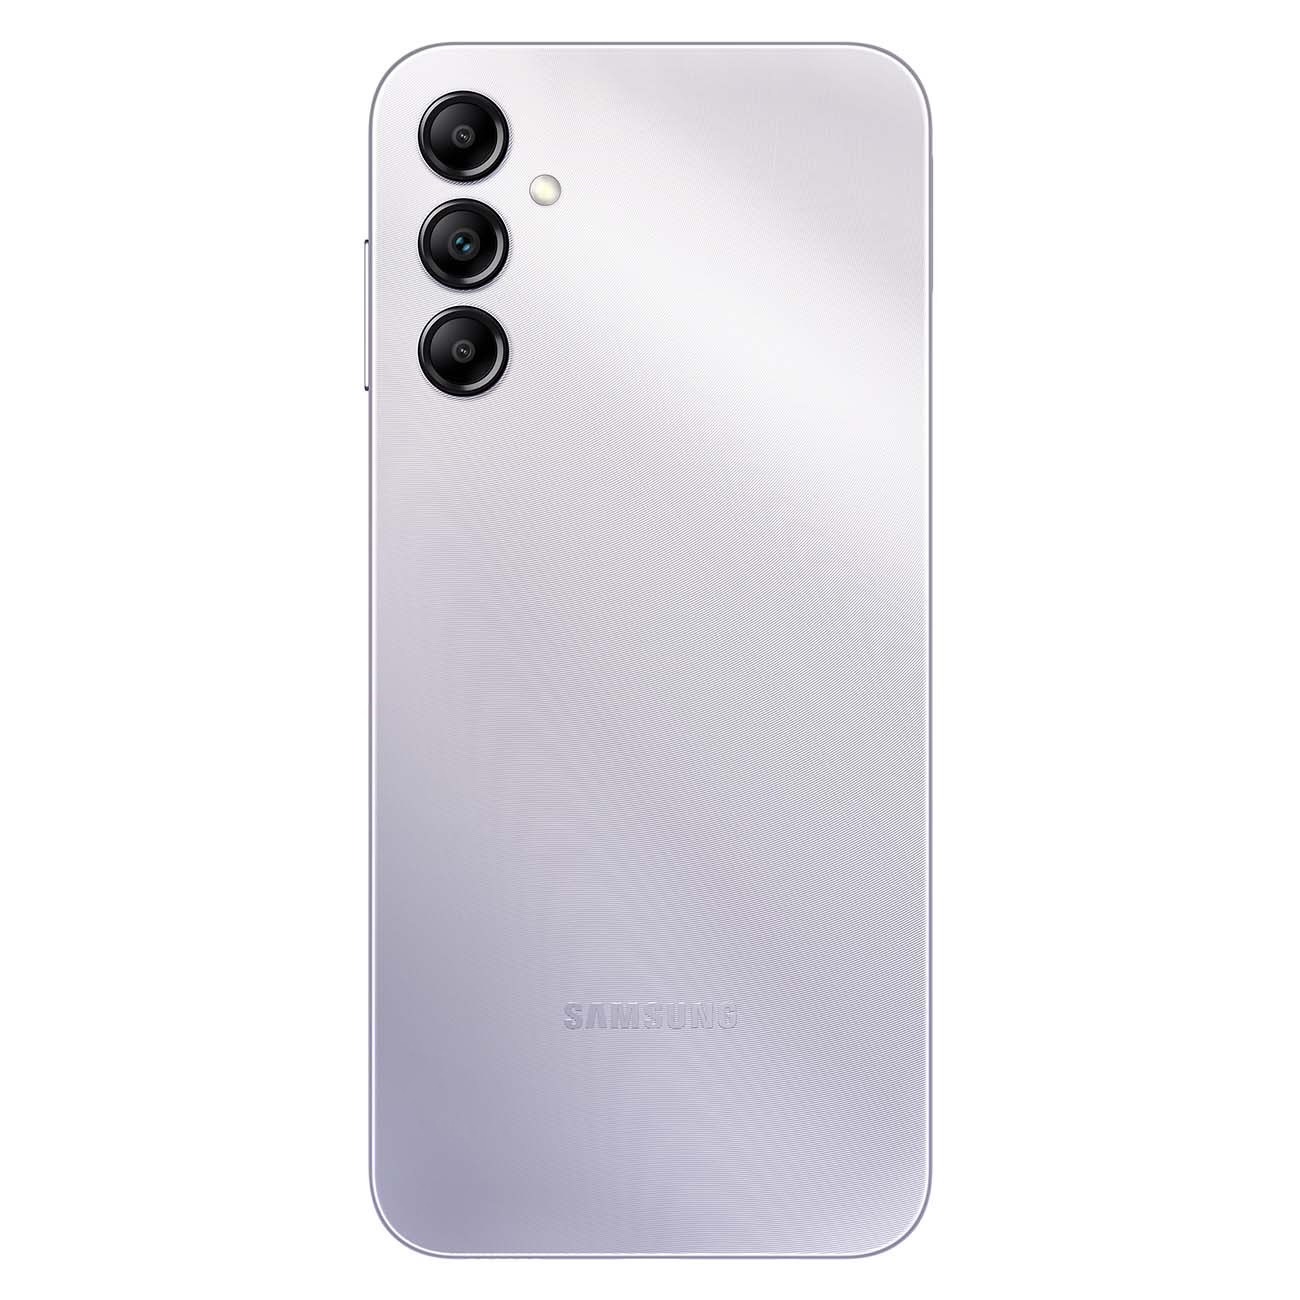 Купить смартфон samsung galaxy a14 4/64gb silver A-Серия в официальном магазине Apple, Samsung, Xiaomi. iPixel.ru Купить, заказ, кредит, рассрочка, отзывы,  характеристики, цена,  фотографии, в подарок.